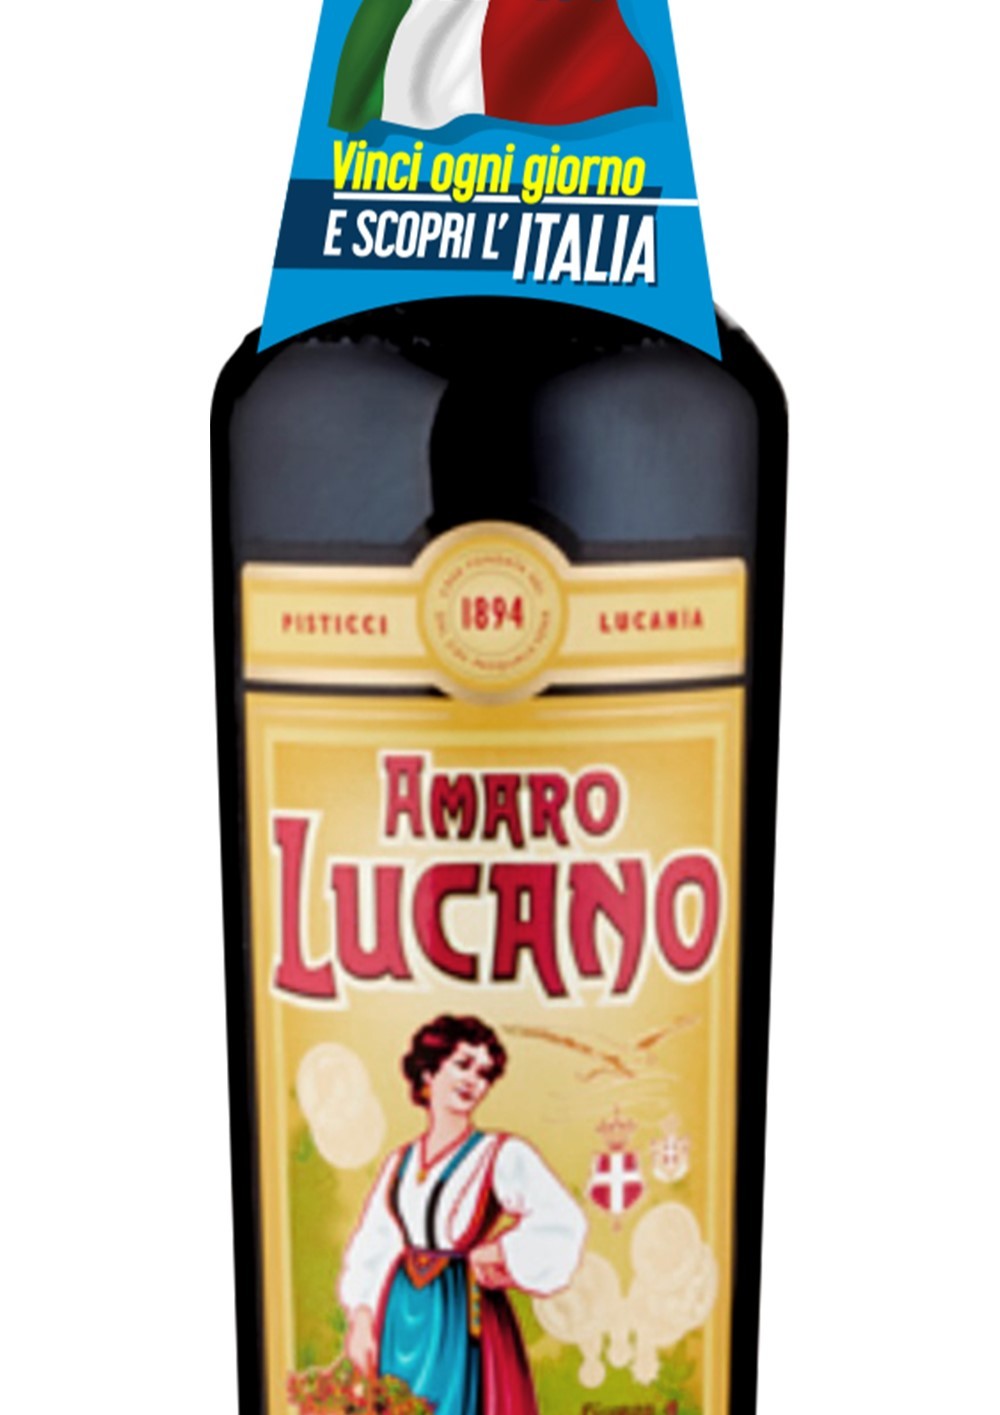 Amaro Lucano: “Orgoglio Italiano” una nuova consumer promo